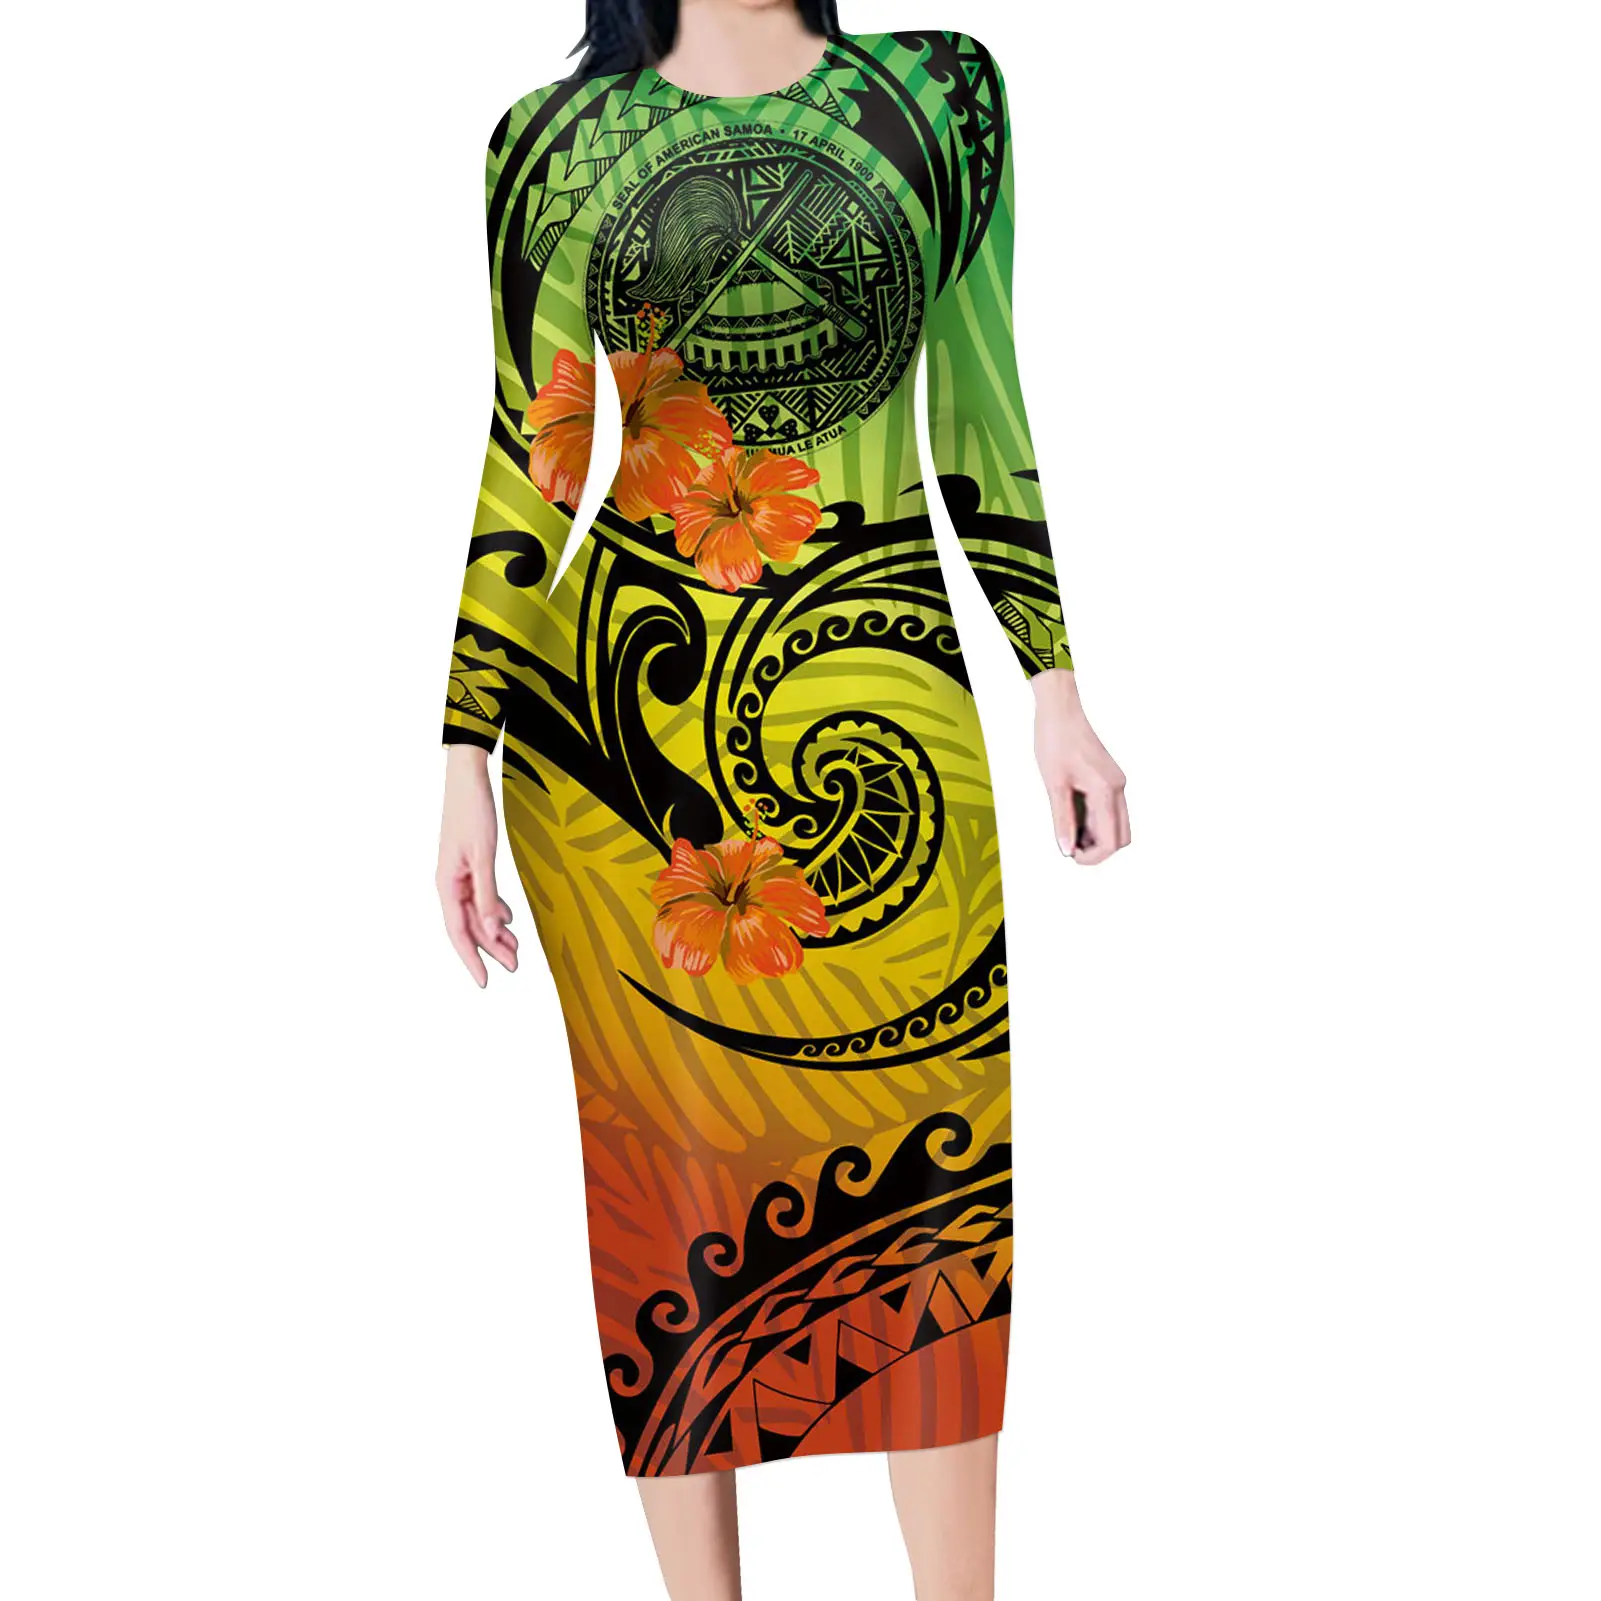 Frauen Arbeiten Kleider Formal Wear Samoan Hibiscus Plumeria Abendkleider Frauen Elegante Lange Hülse O Hals Neue Mode Frauen Kleid